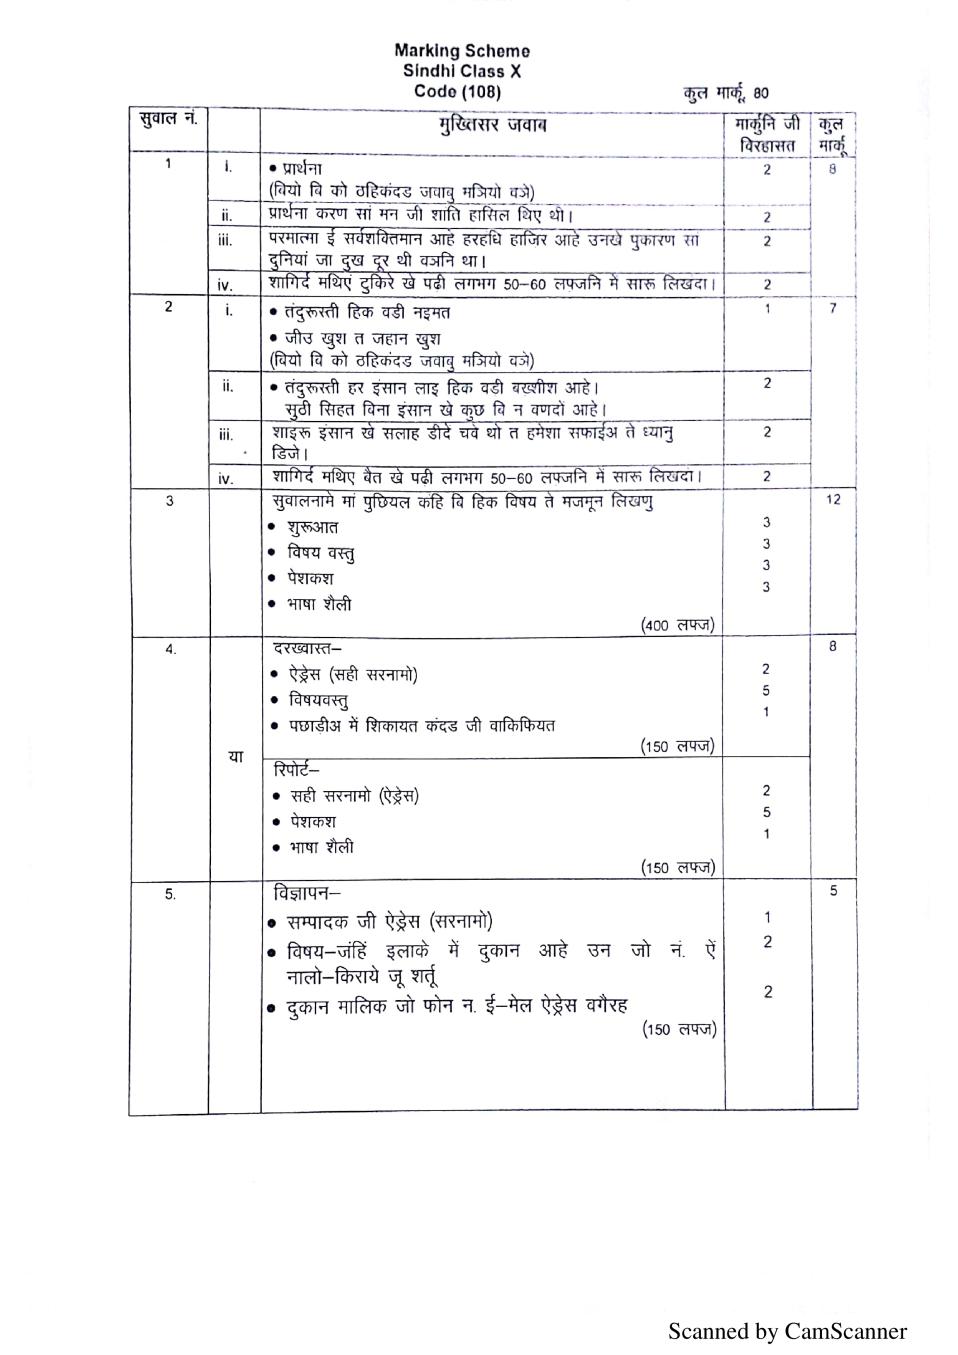 CBSE Class 10 Marking Scheme 2020 for Sindhi - Page 1